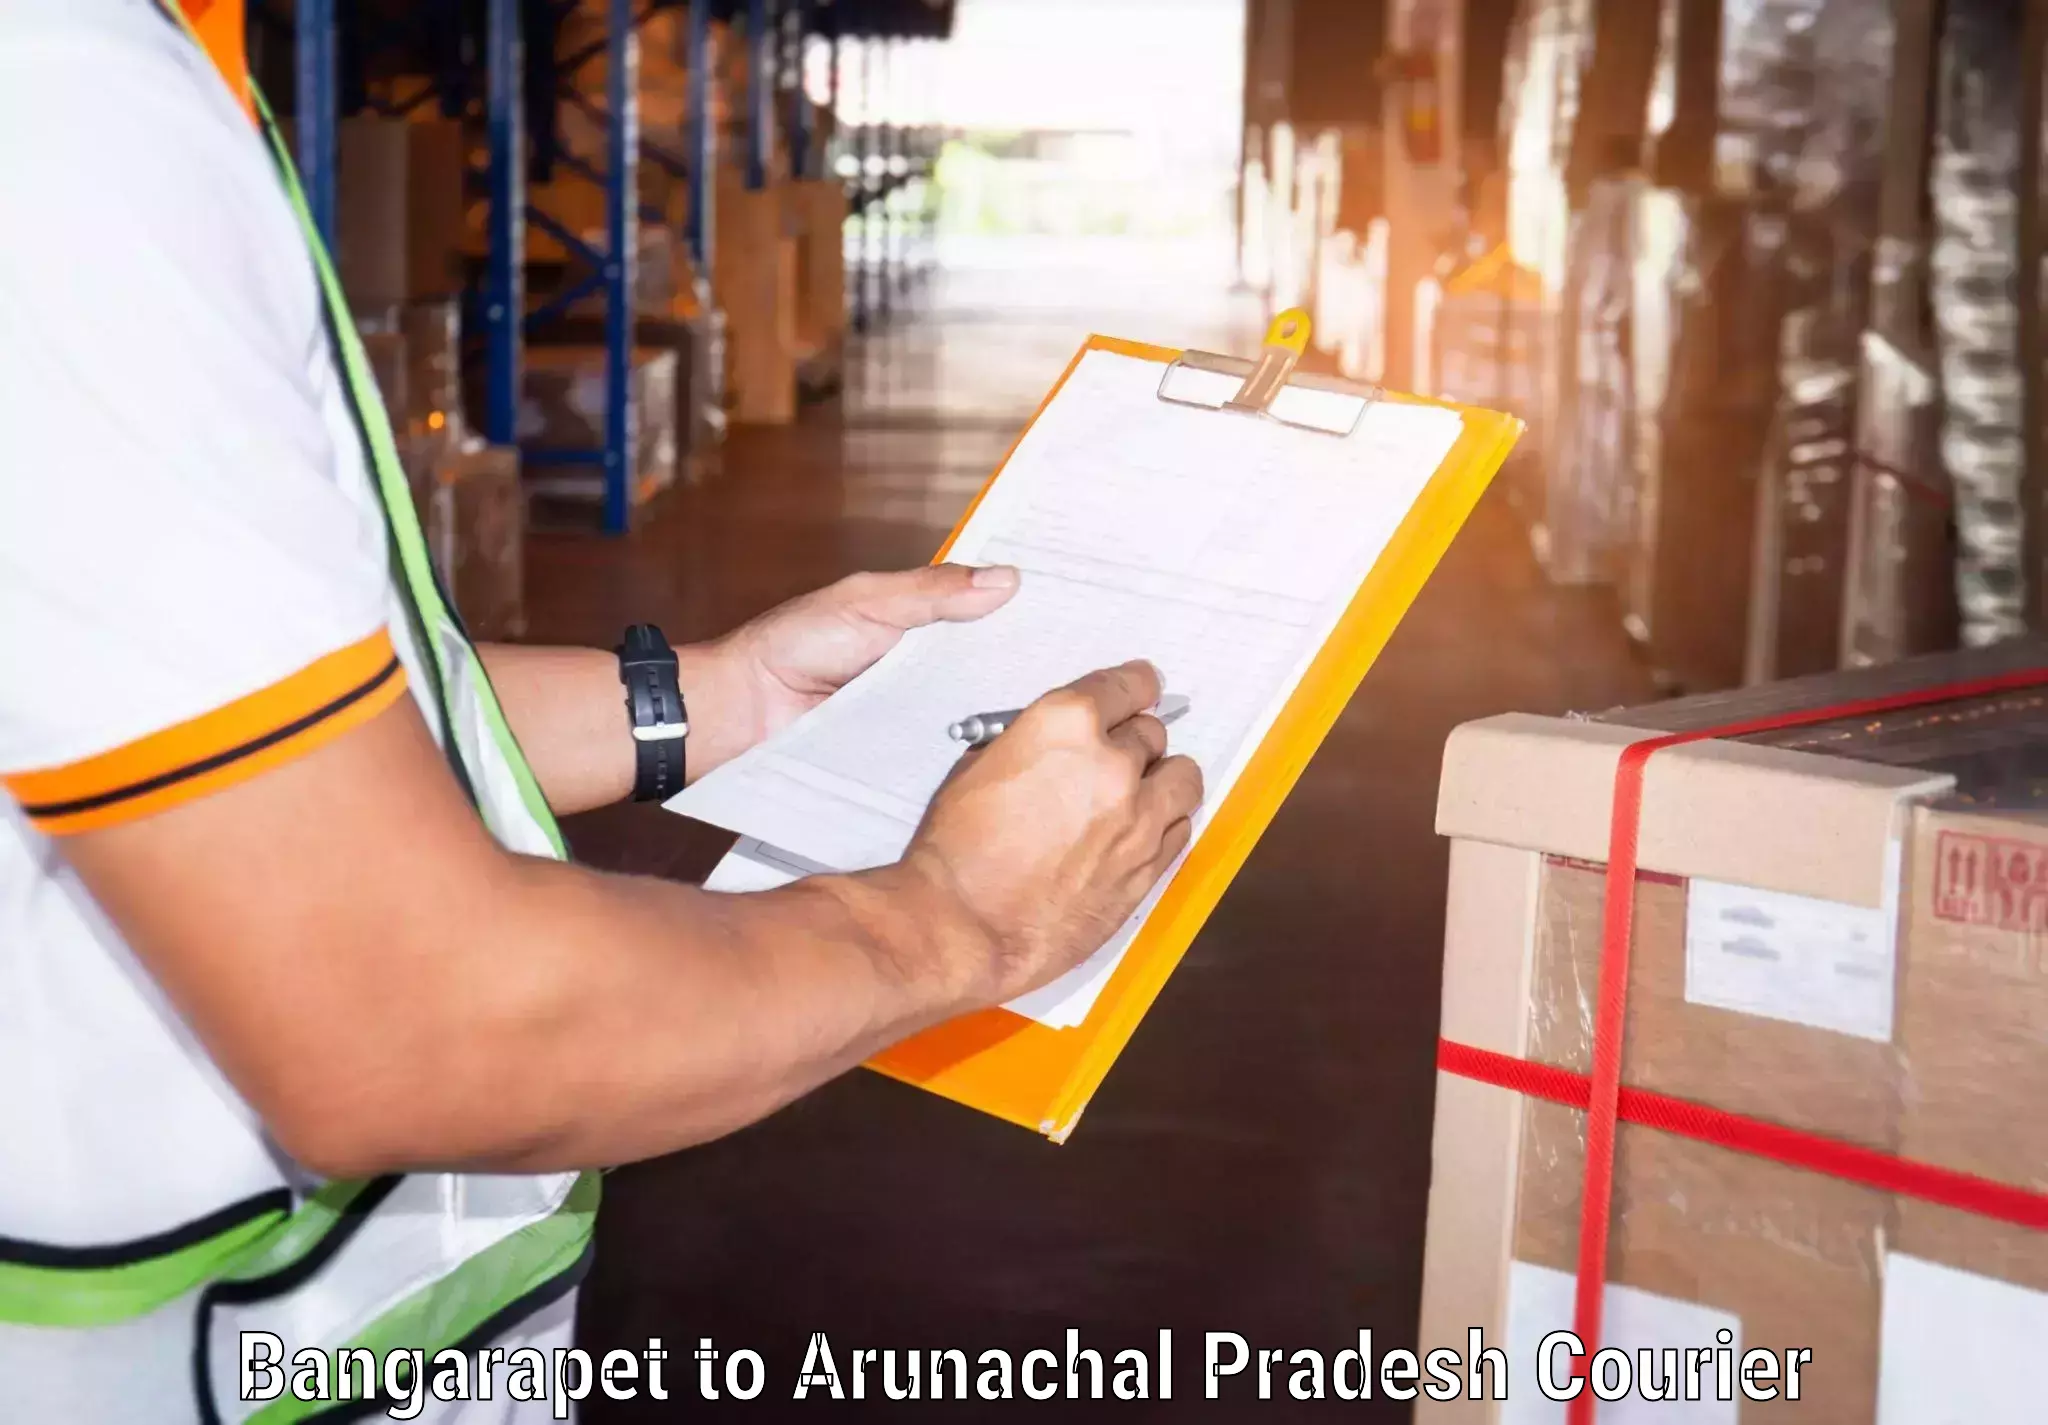 Efficient parcel service Bangarapet to Chowkham